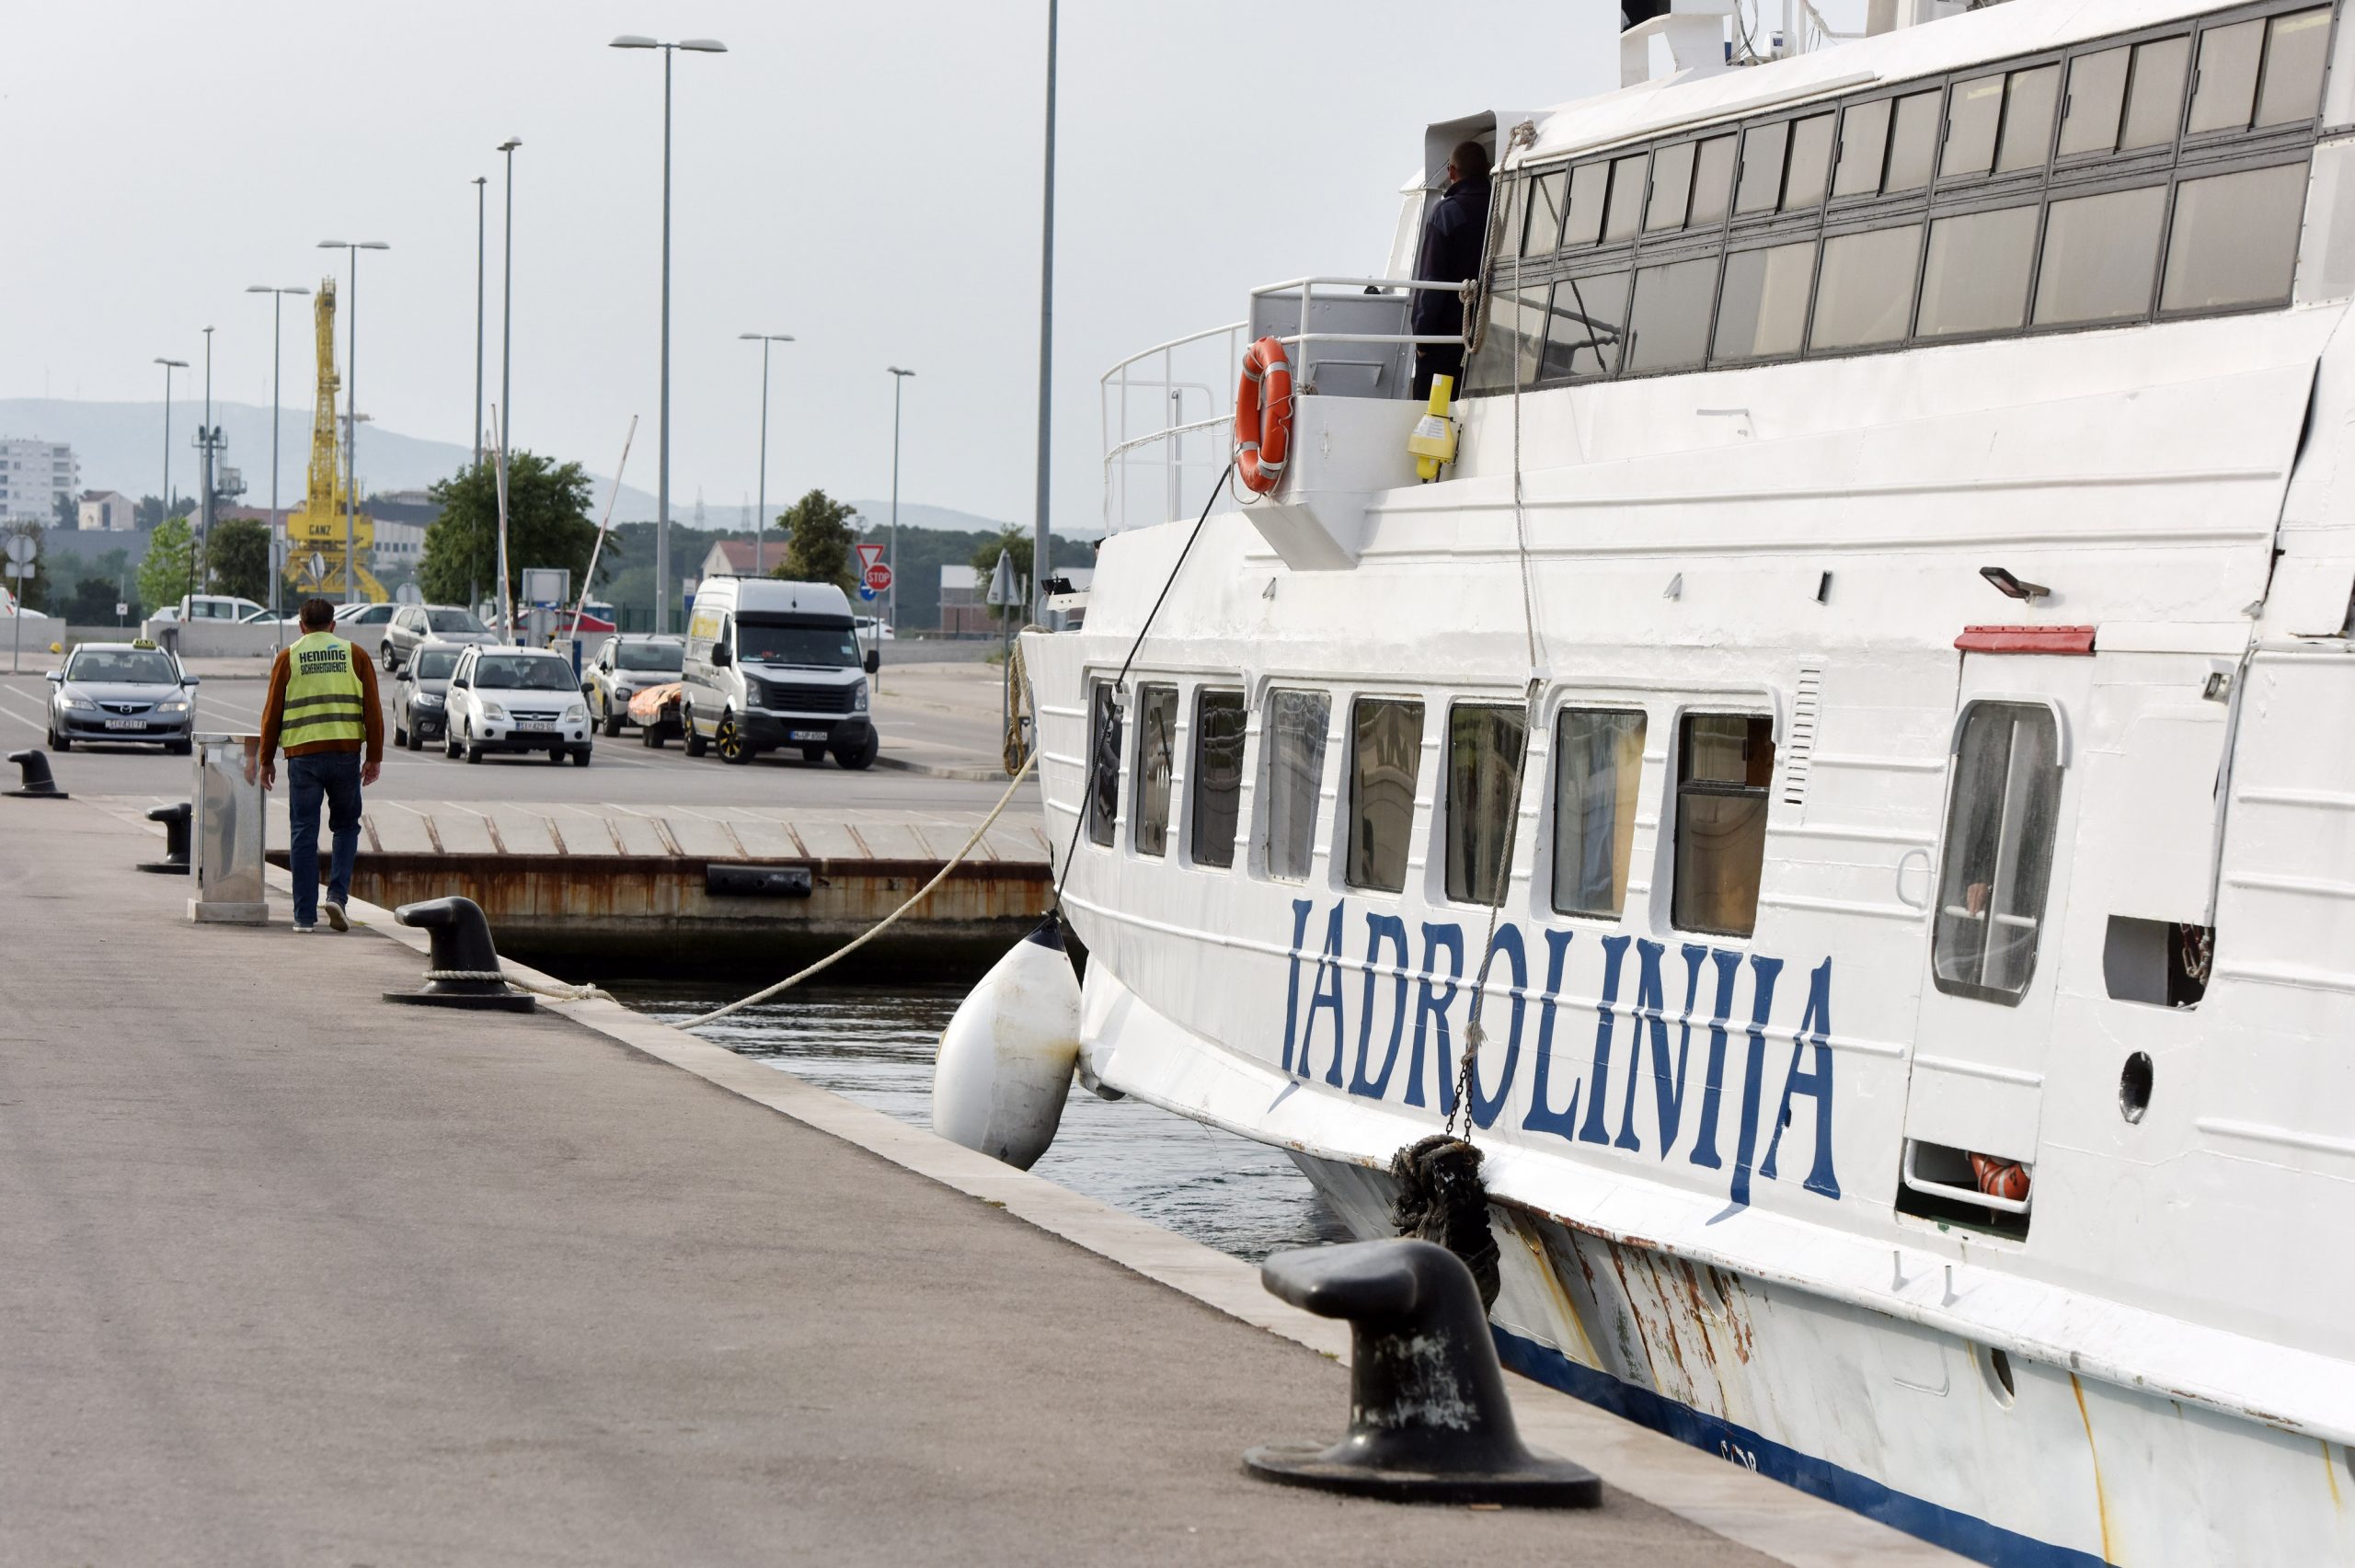 18.05.2020., Sibenik - Odlukom stozera Civile zastite od danas se ukidaju mjere ogranicenja za javni prijevoz u linijskom obalnom pomorskom prometu.
Photo: Hrvoje Jelavic/PIXSELL